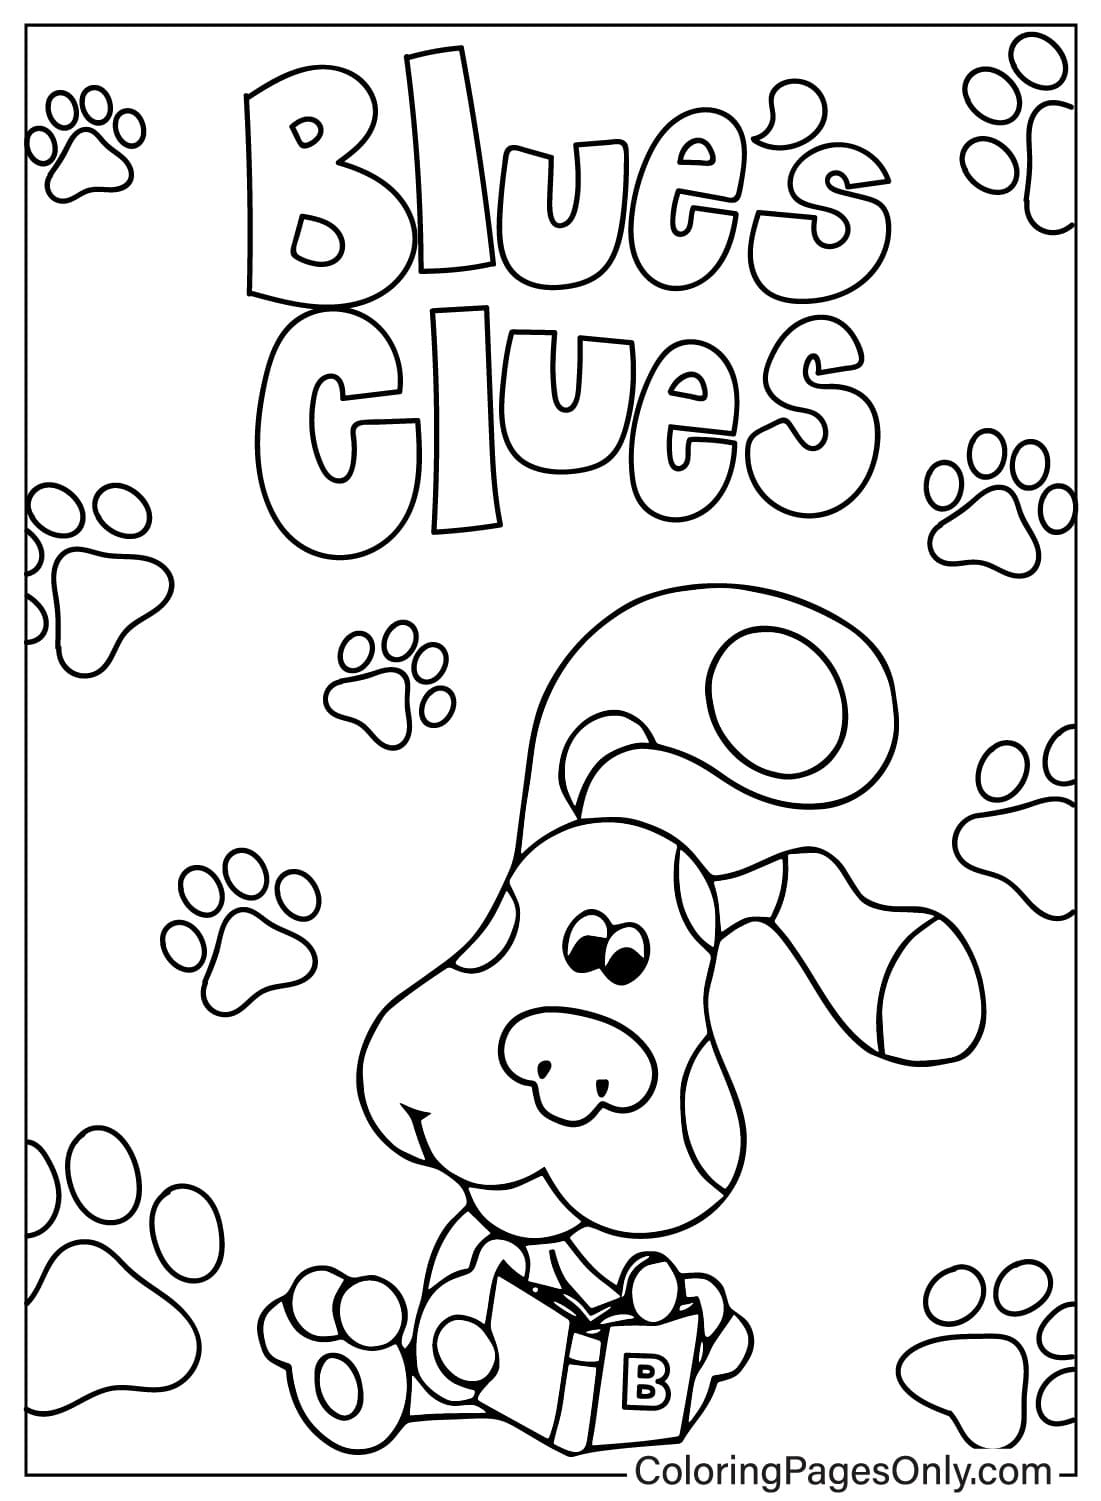 Bilder Blue's Clues Malvorlagen von Blue's Clues